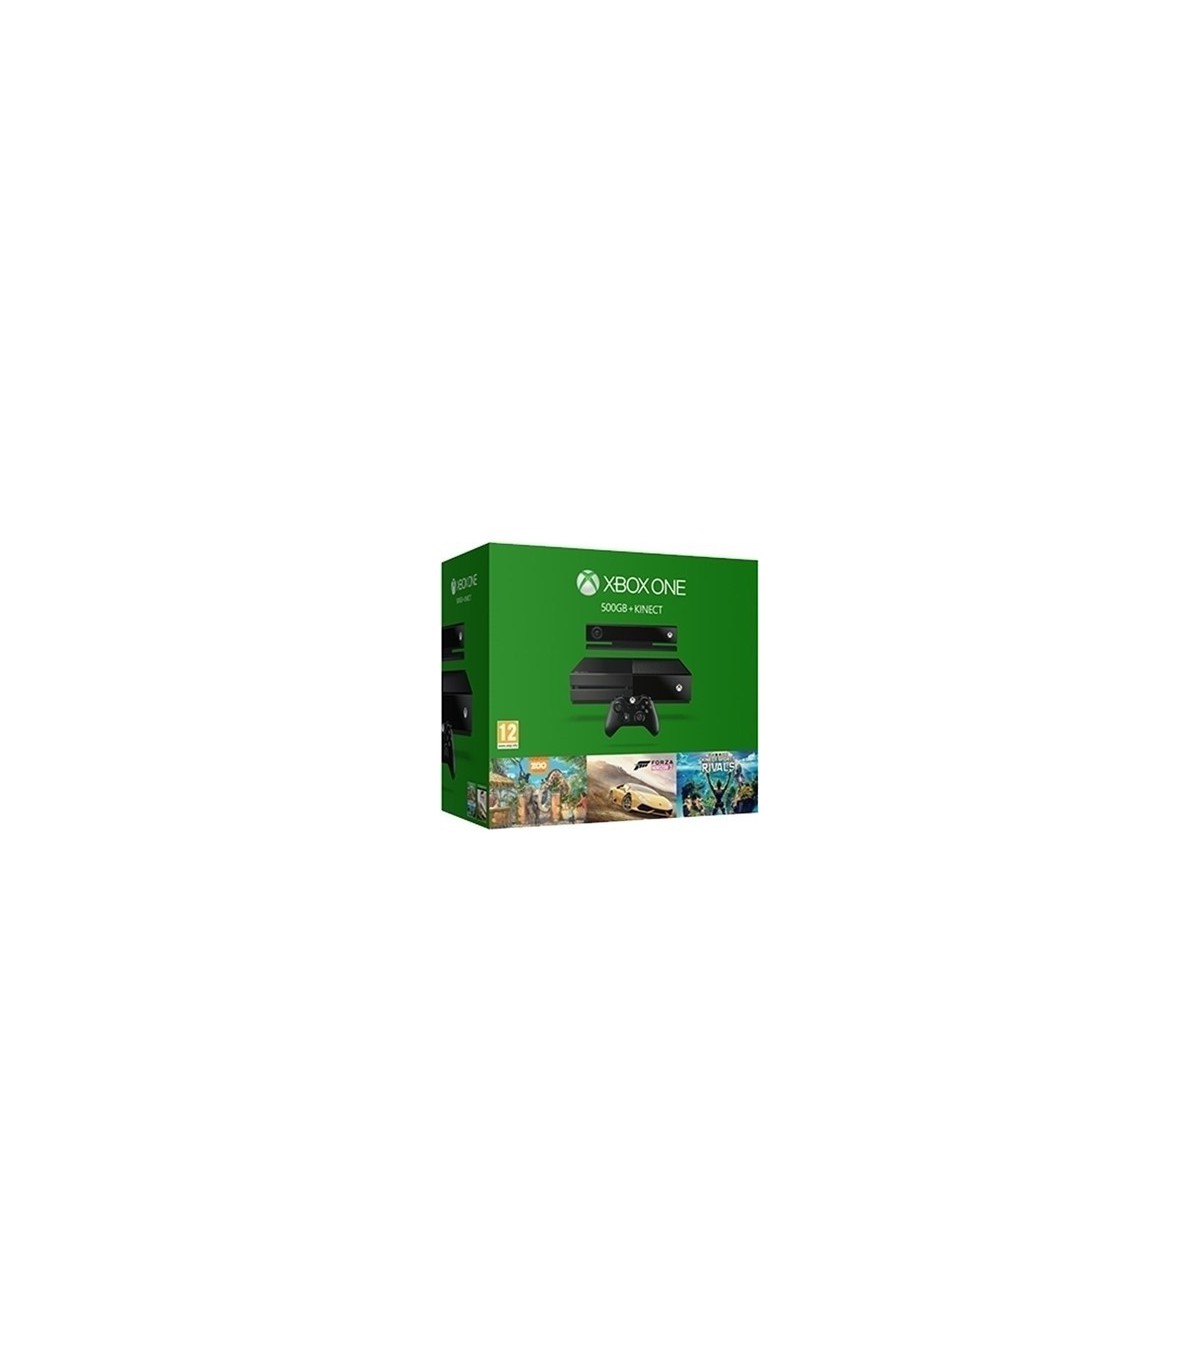 Xbox One With Kinect Bundle کارکرده